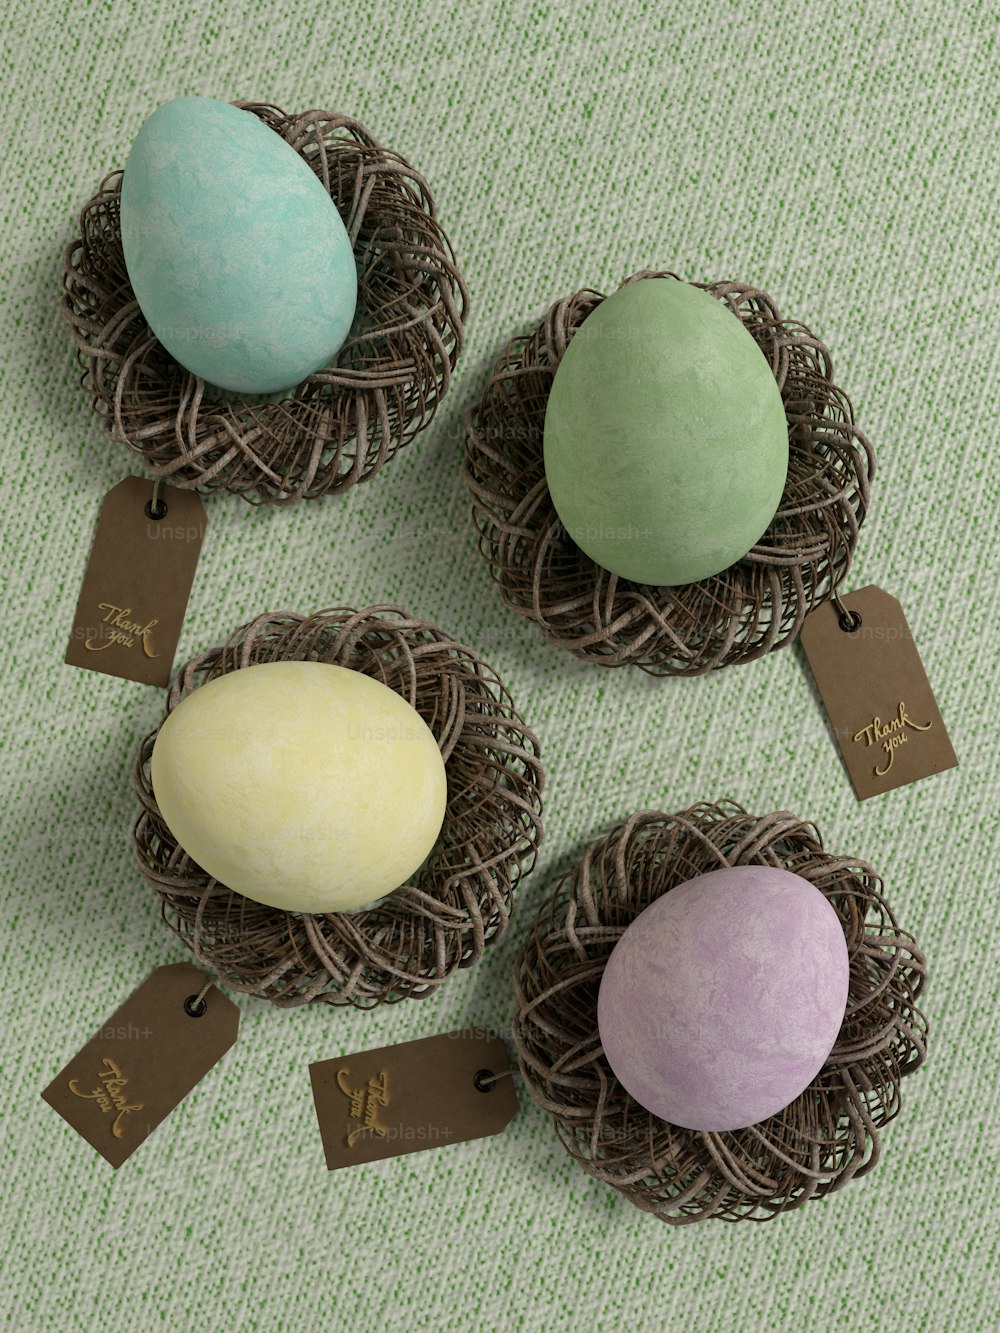 Trois œufs dans un nid sur une table